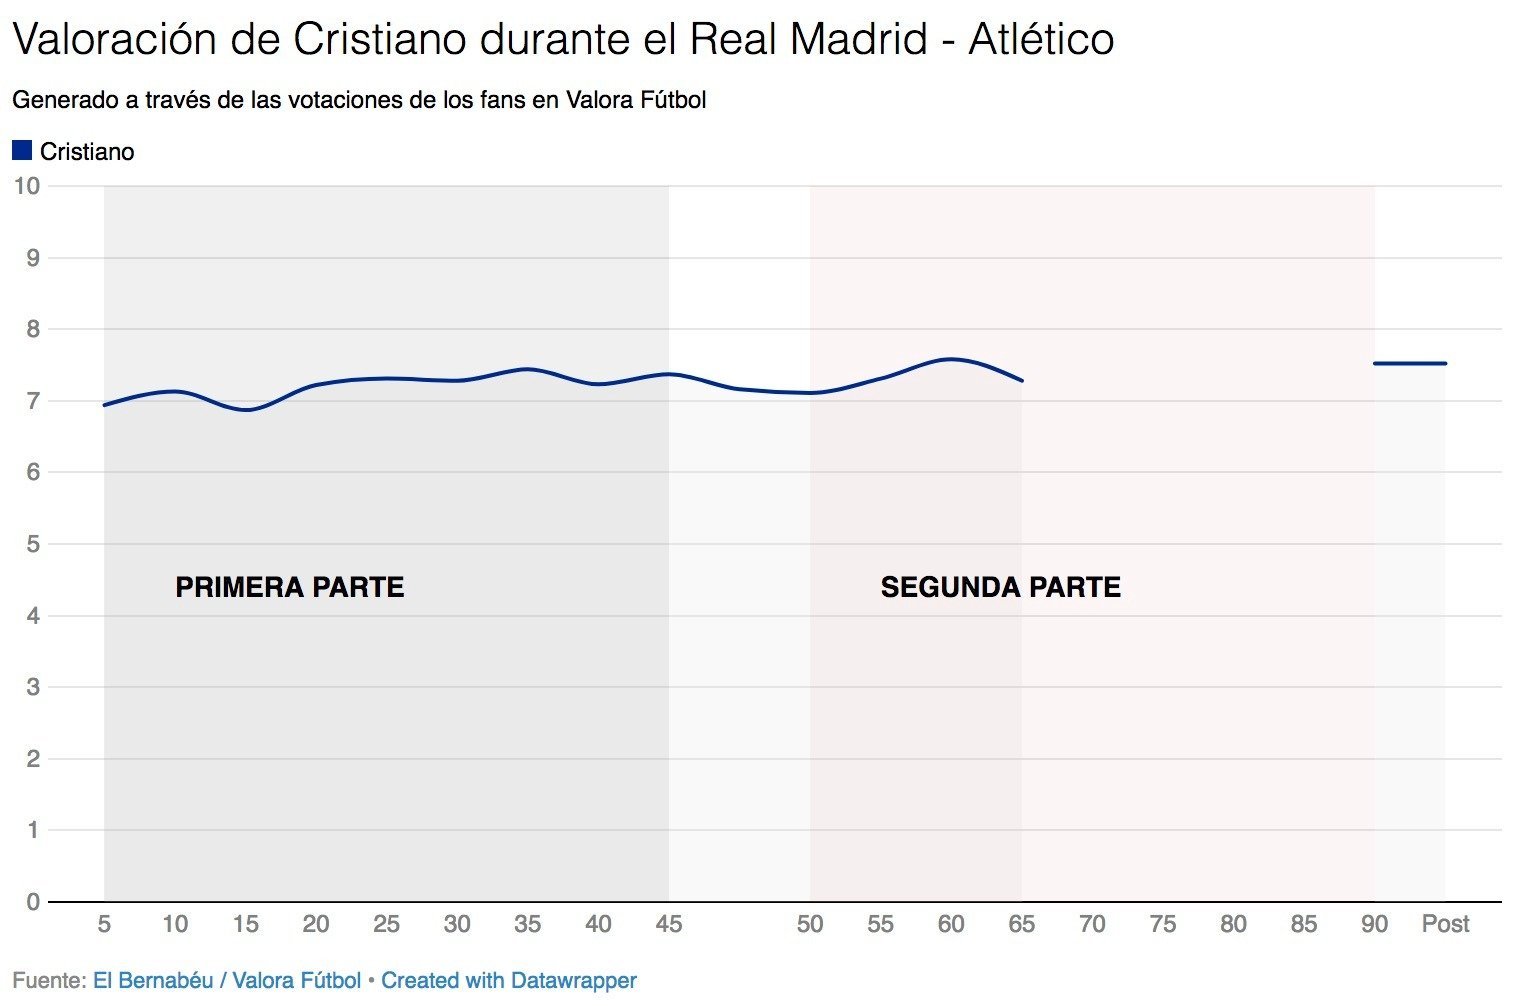 Así votaron los usuarios de Valora Fútbol a Cristiano Ronaldo durante el Real Madrid - Atlético